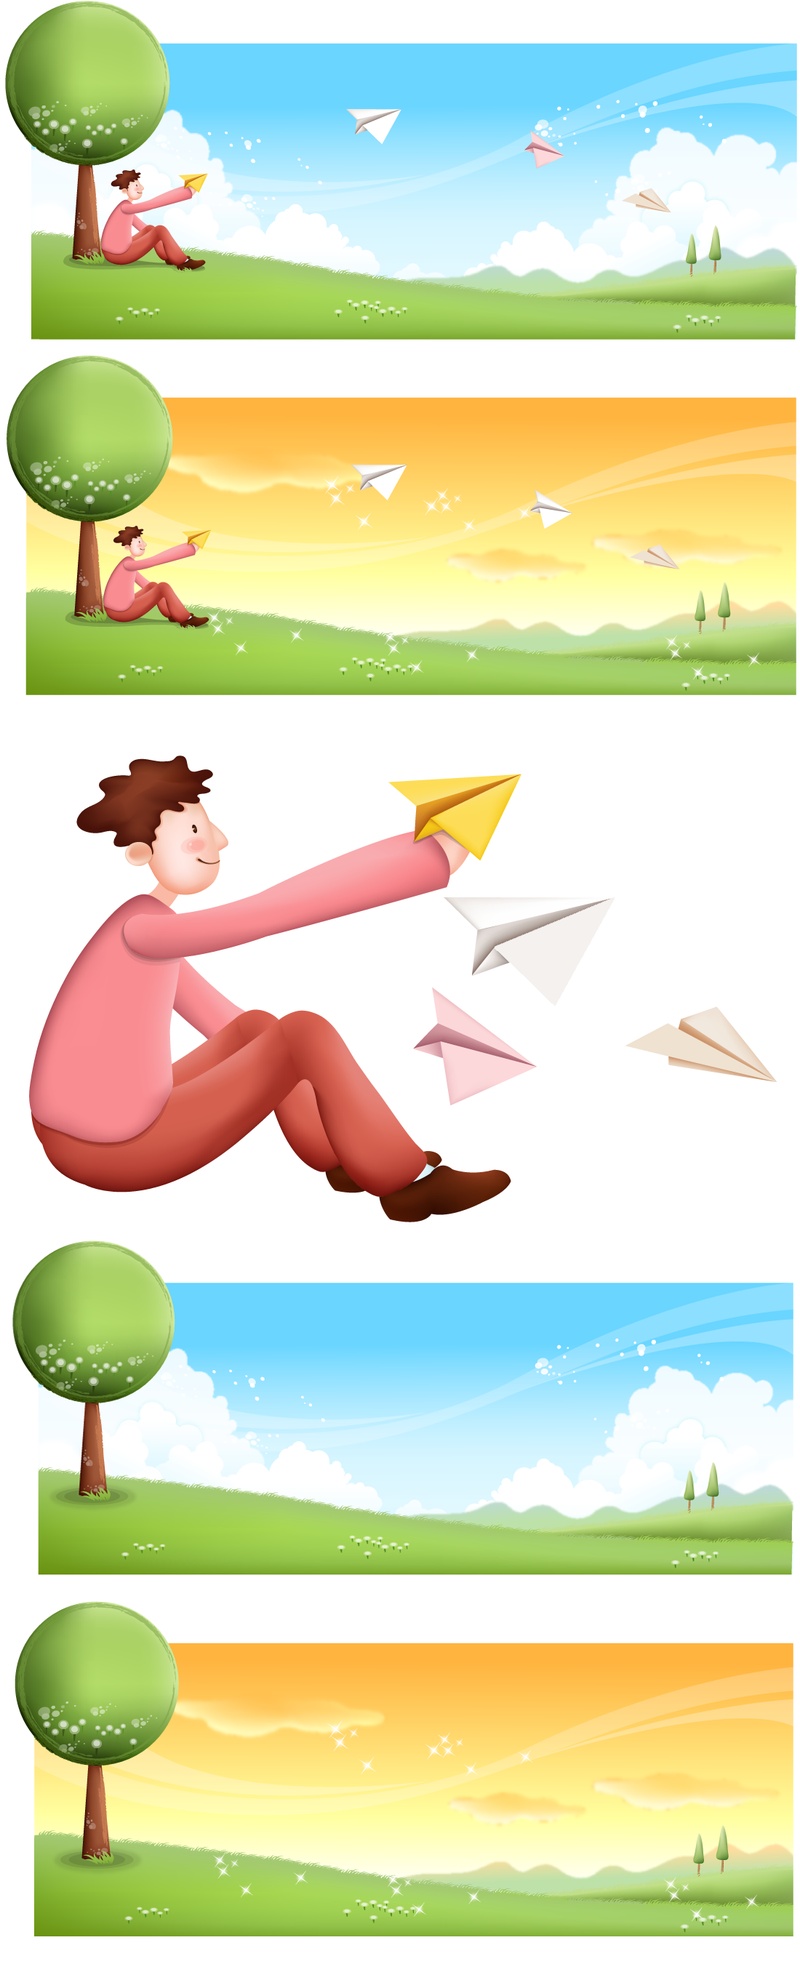 放纸飞机的男人韩国人物插画